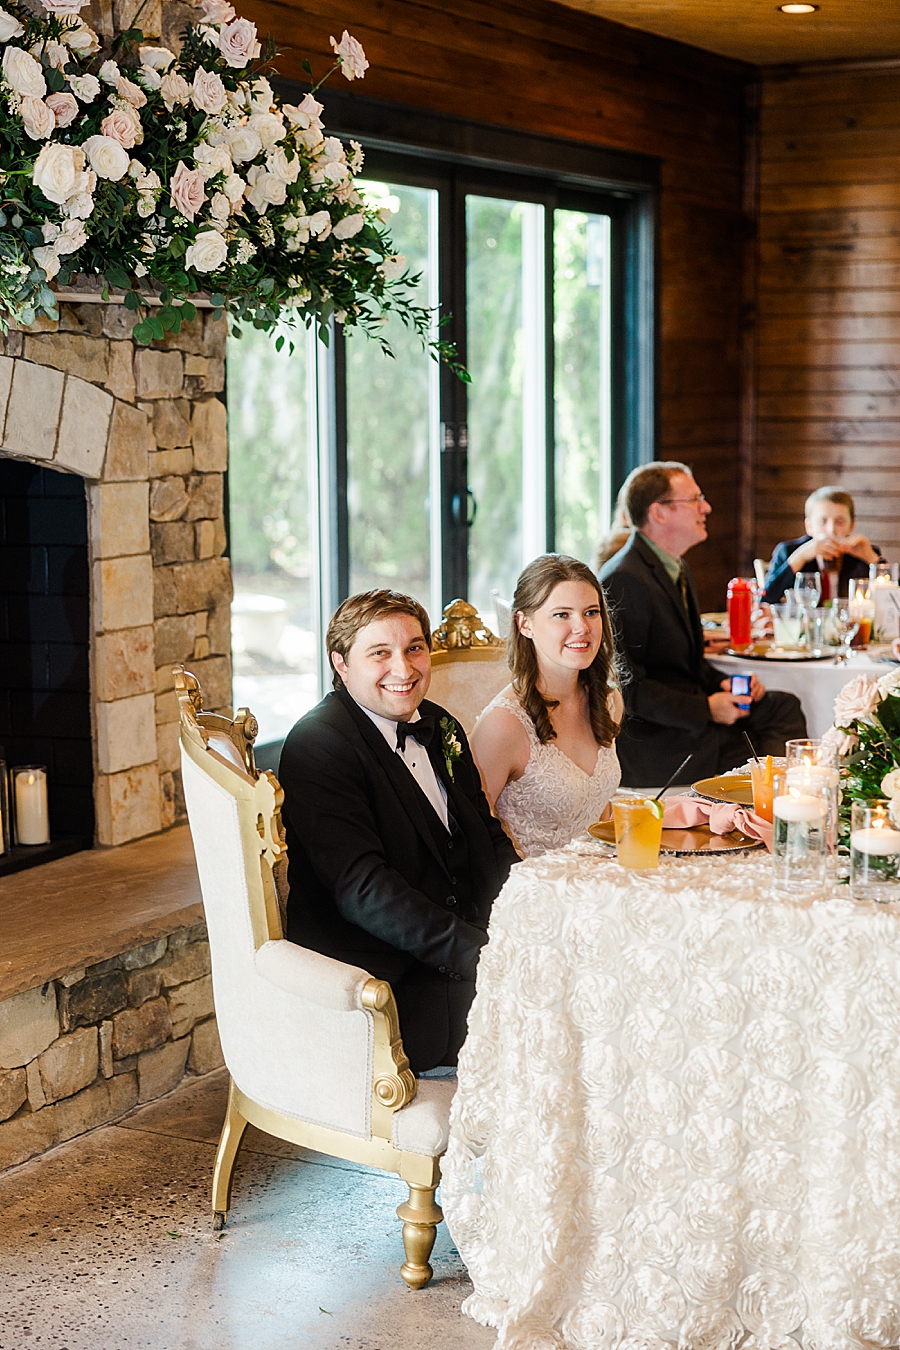 Sitting at the sweetheart table at wedding by Amanda May Photos